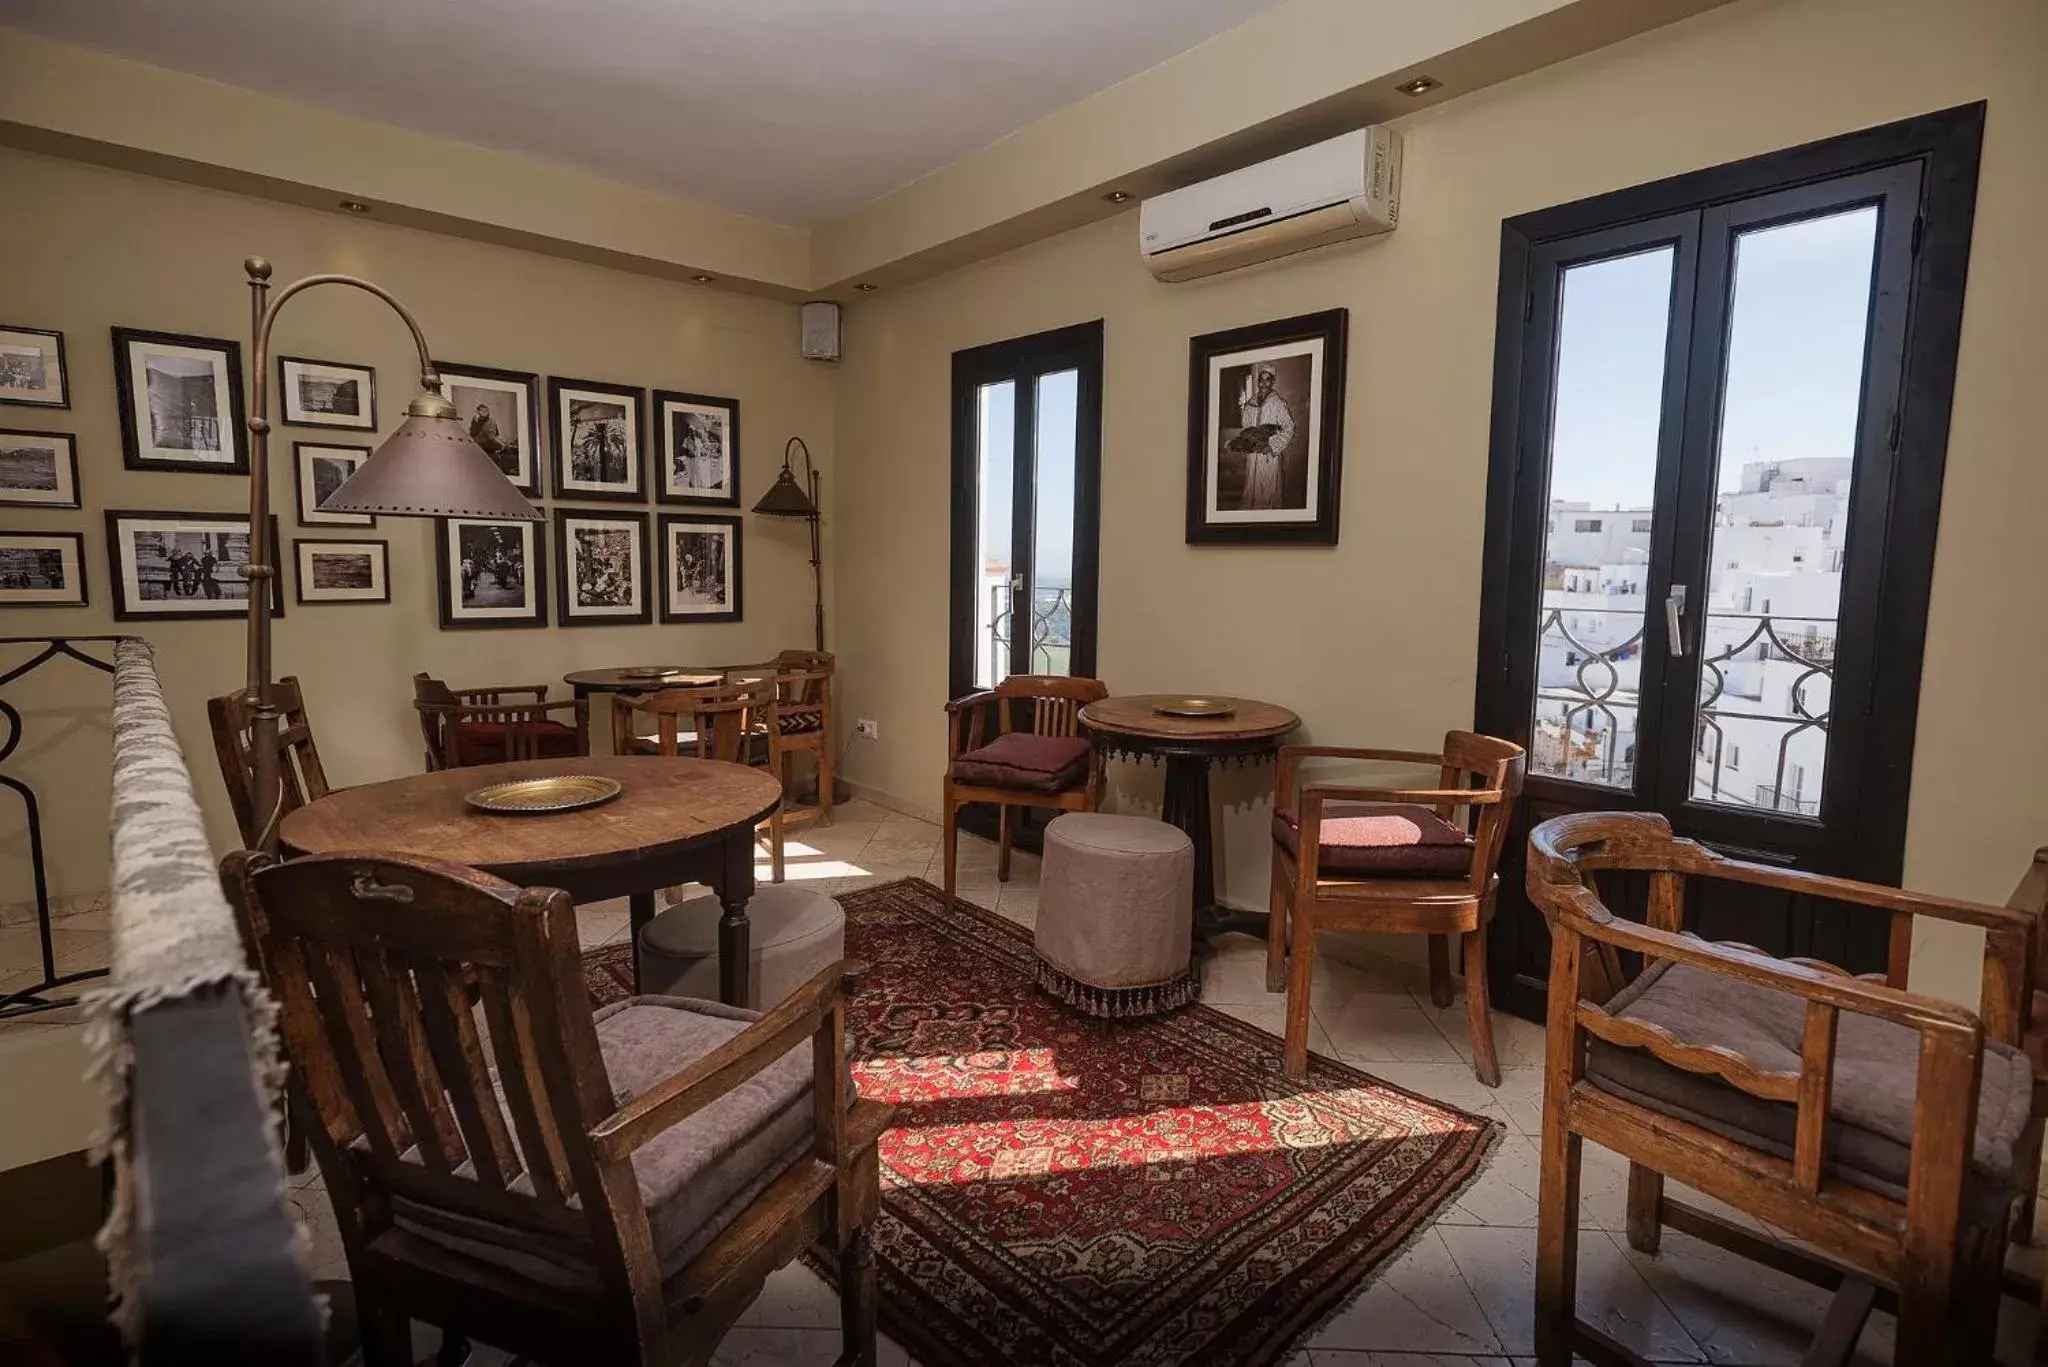 Area and facilities, Lounge/Bar in Hotel La Casa del Califa